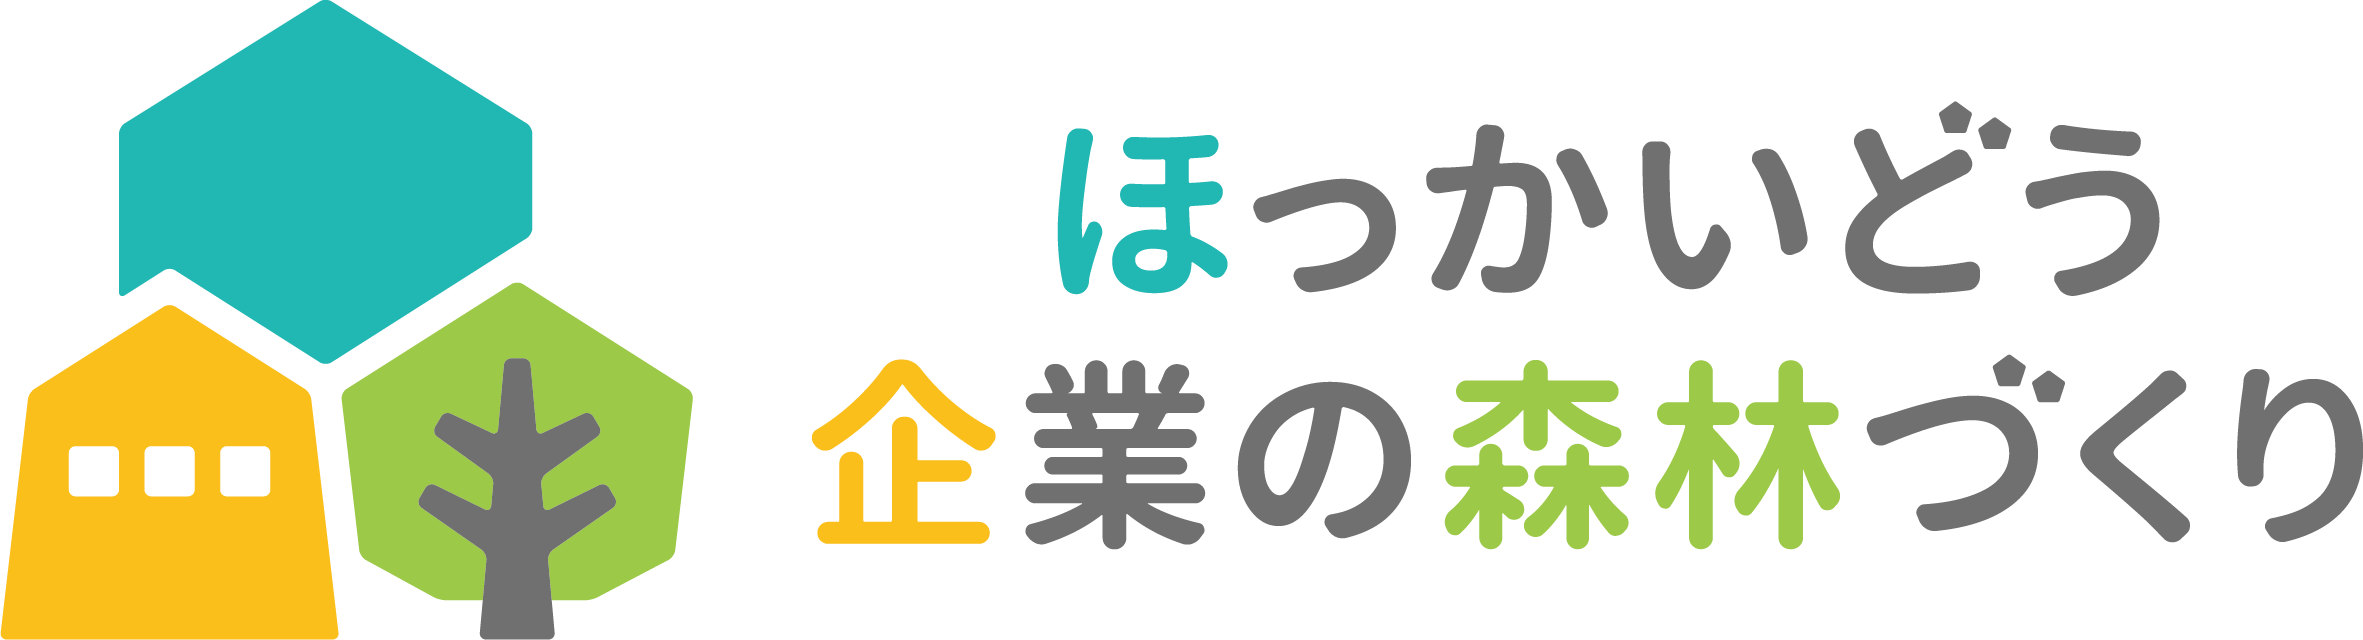 shinrindukuri_logo_4.png